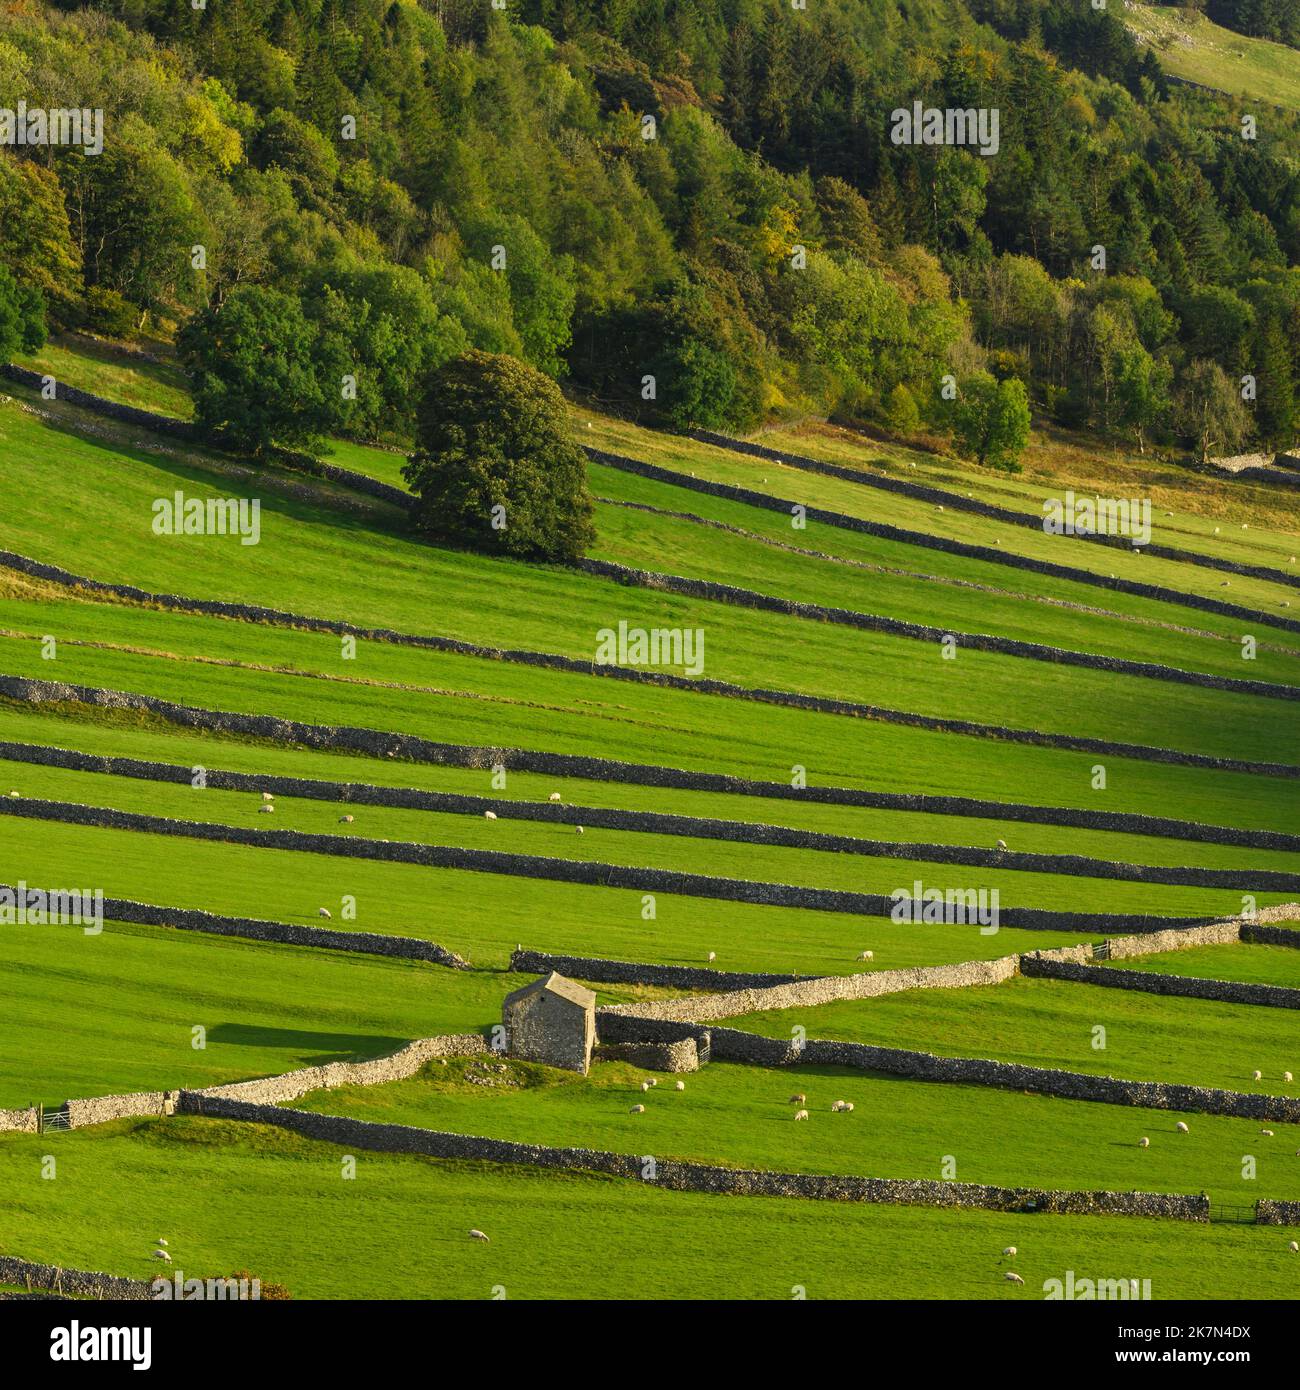 Paesaggio panoramico Wharfedale (pendio a valle, alberi boscosi, collina, vecchio fienile rustico in pietra, sistemi di campo) - Kettlewell, Yorkshire Dales, Inghilterra, Regno Unito. Foto Stock